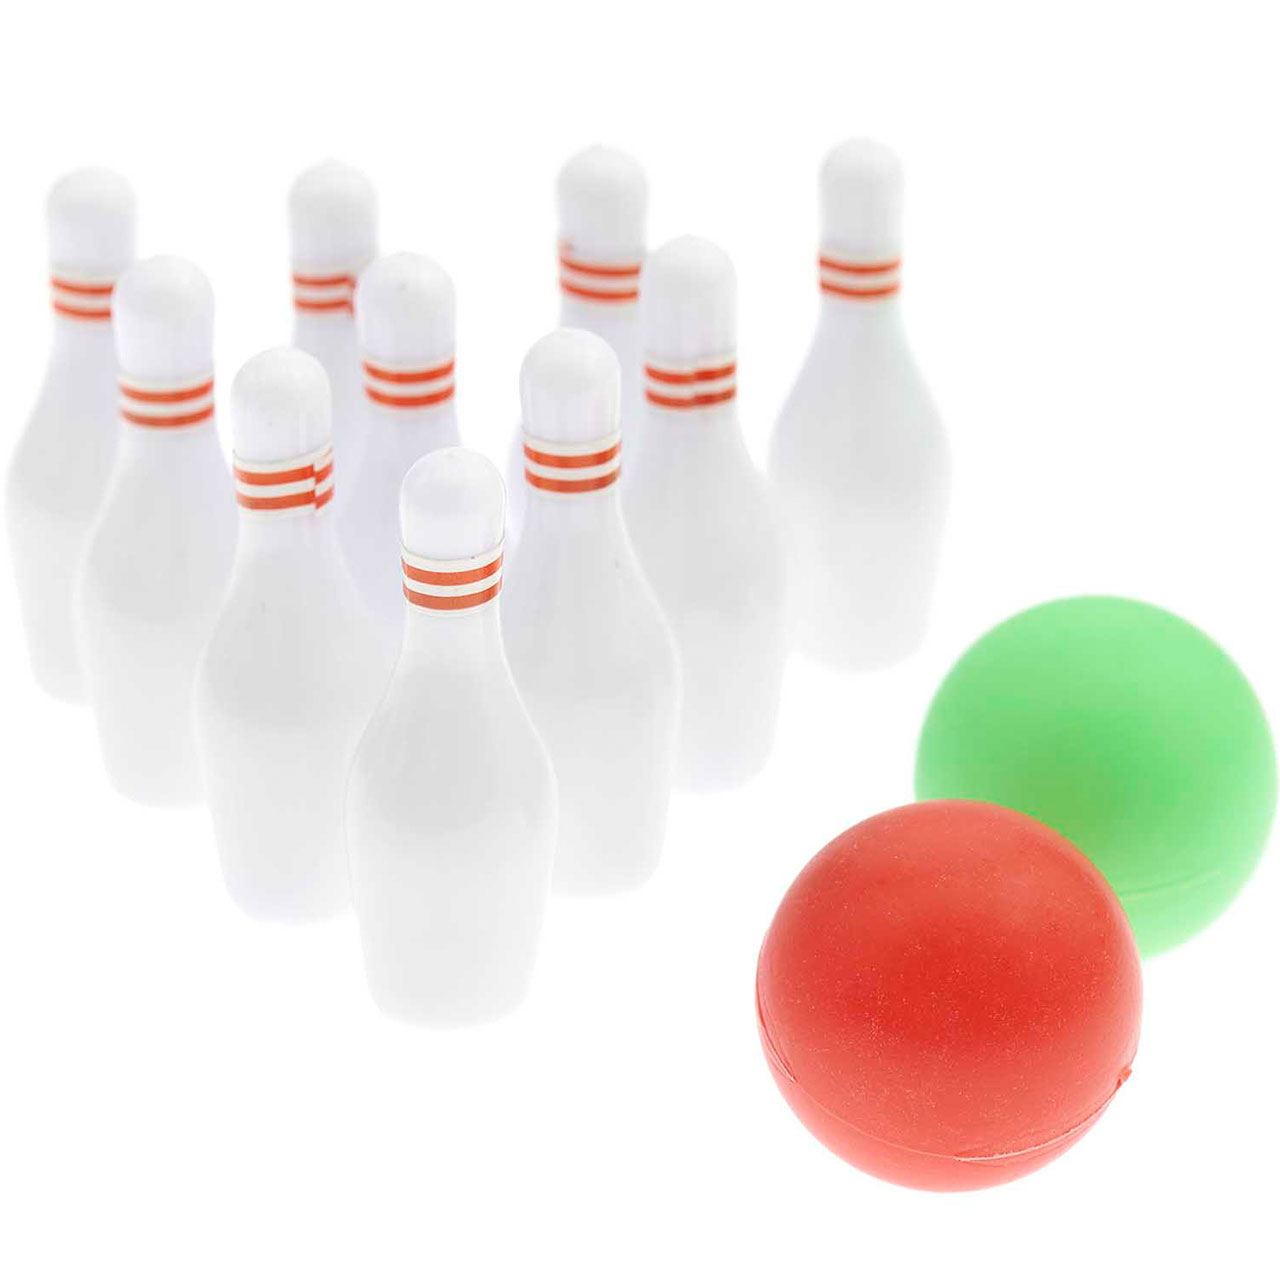 Mini Bowling Set